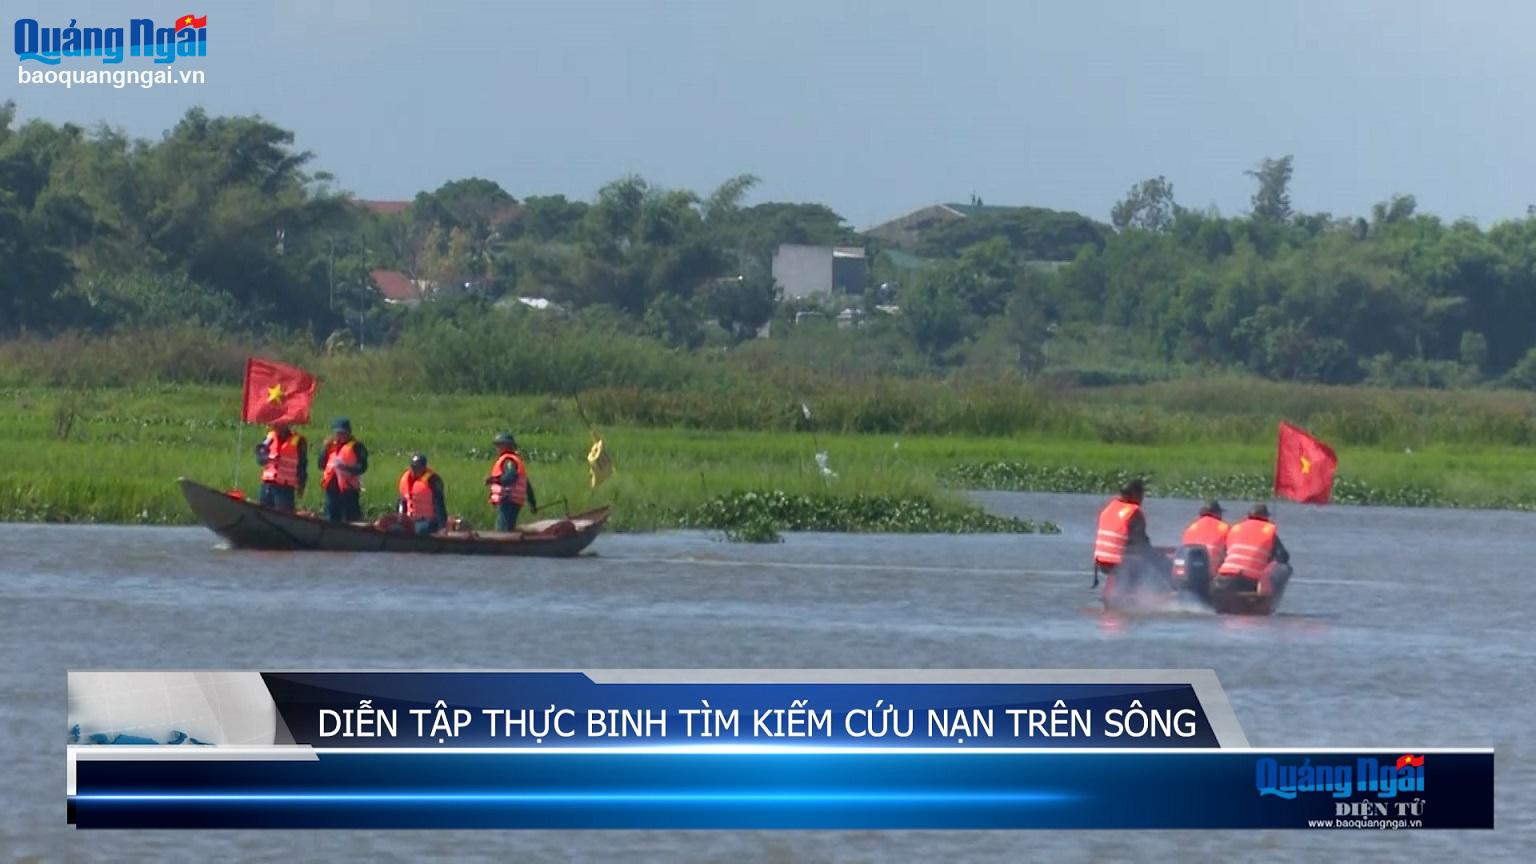 Video: Diễn tập thực binh tìm kiếm cứu nạn trên sông